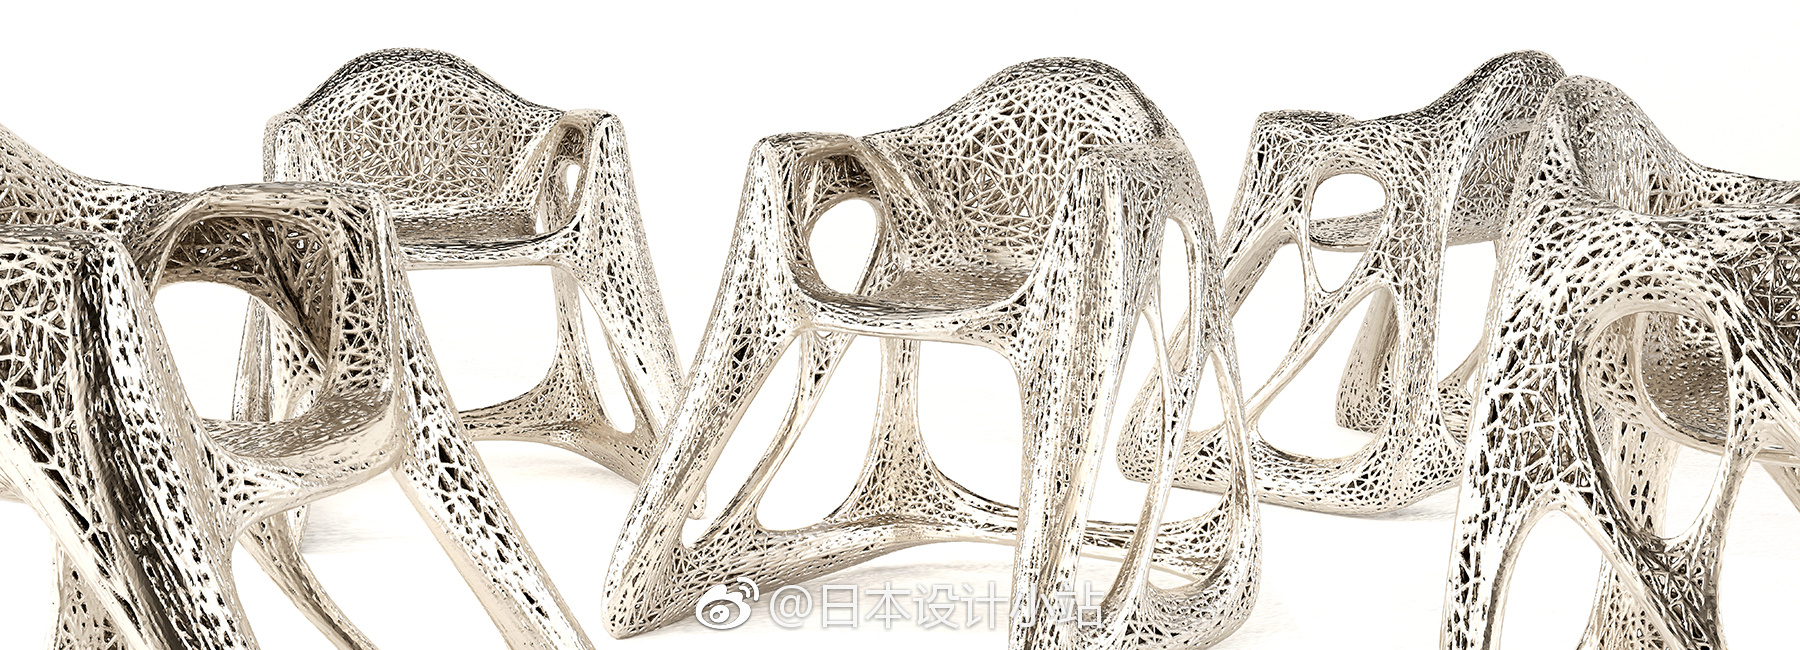 3D打印金属椅子 | by John Briscella